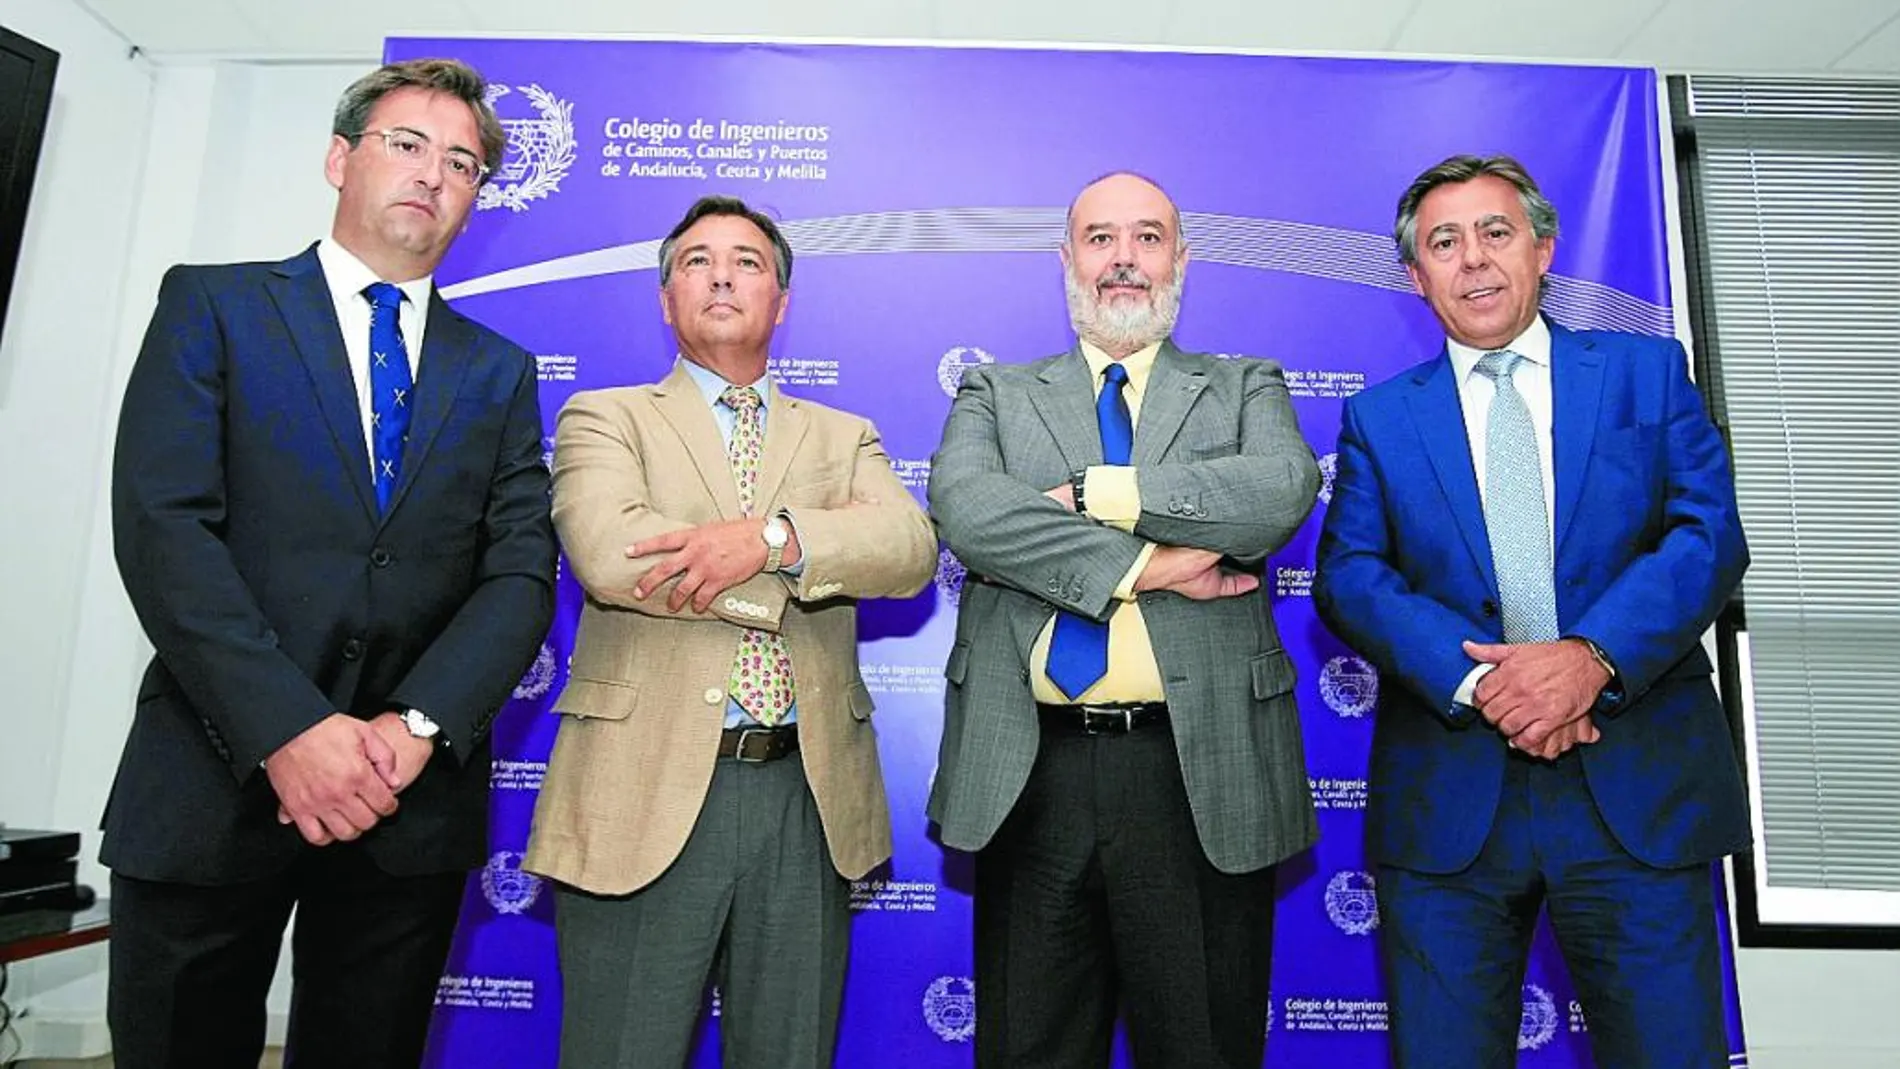 Ignacio Sánchez (Asica), Francisco Carmona (Fadeco), José Abraham Carrascosa (Colegio de Ingenieros) y Francisco Felipe Fernández (Ceacop) se ofrecieron para consensuar la estrategia en infraestructuras.